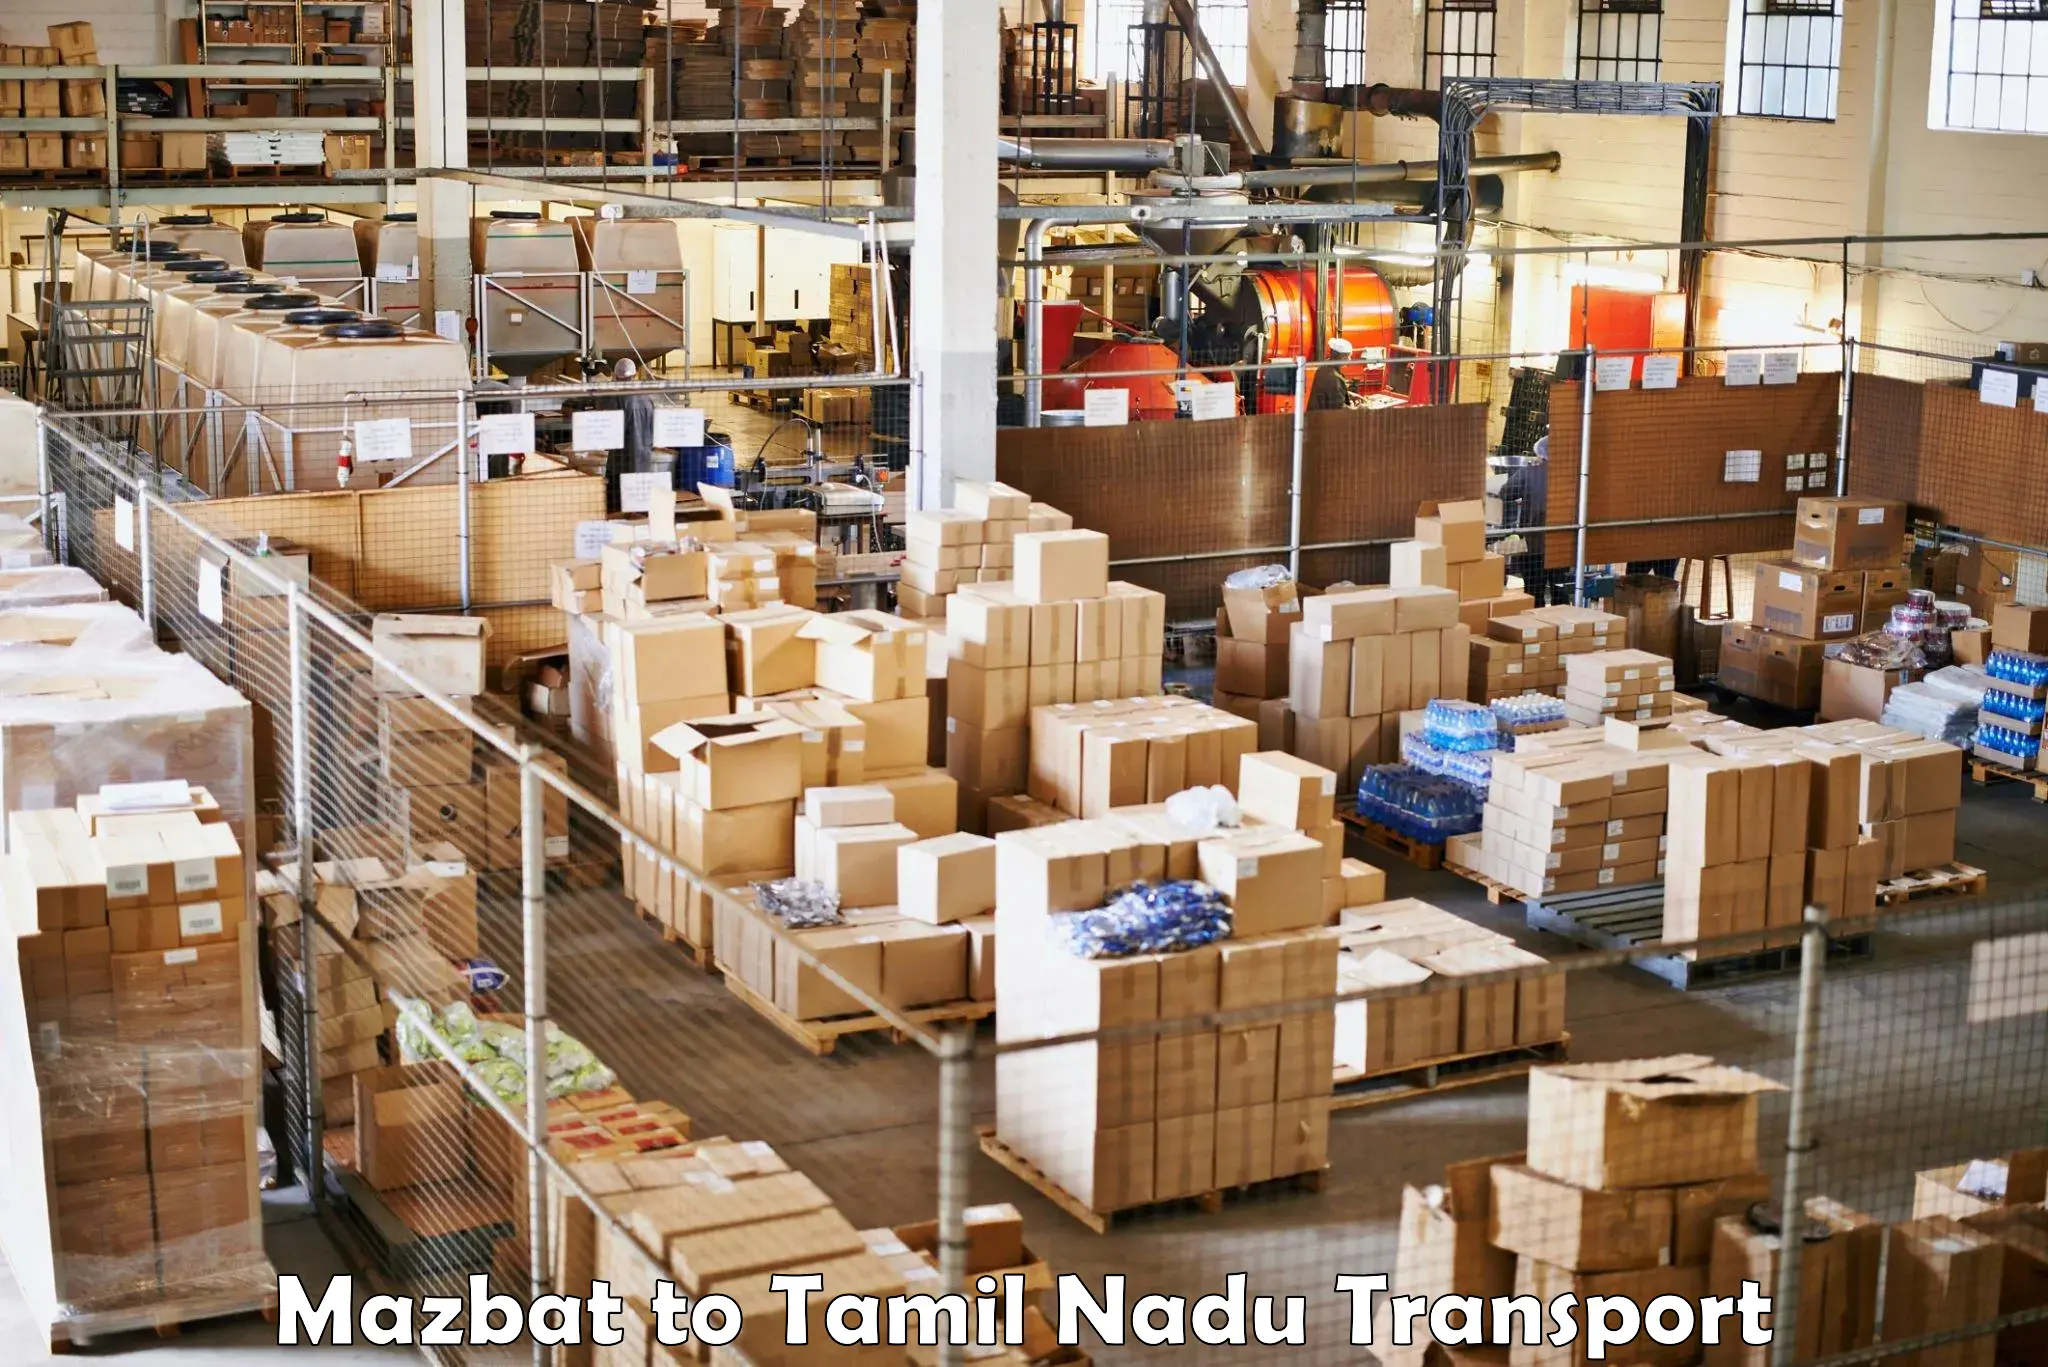 All India transport service Mazbat to Ayyampettai